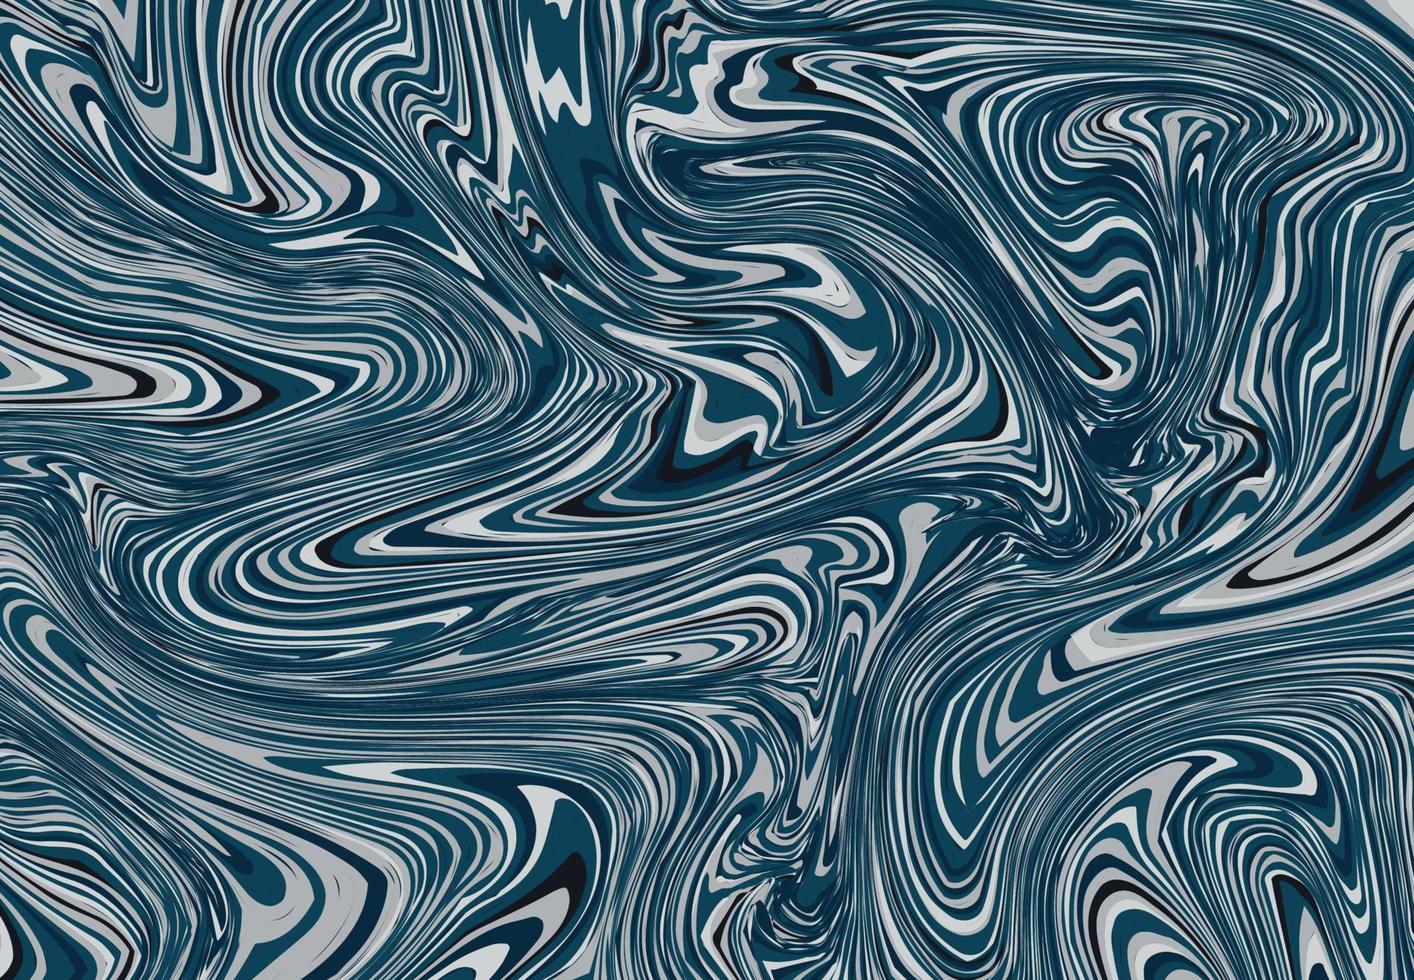 abstracte blauwe lijnpatroon van knikkers decoratieve illustraties achtergrond. illustratie vector eps10